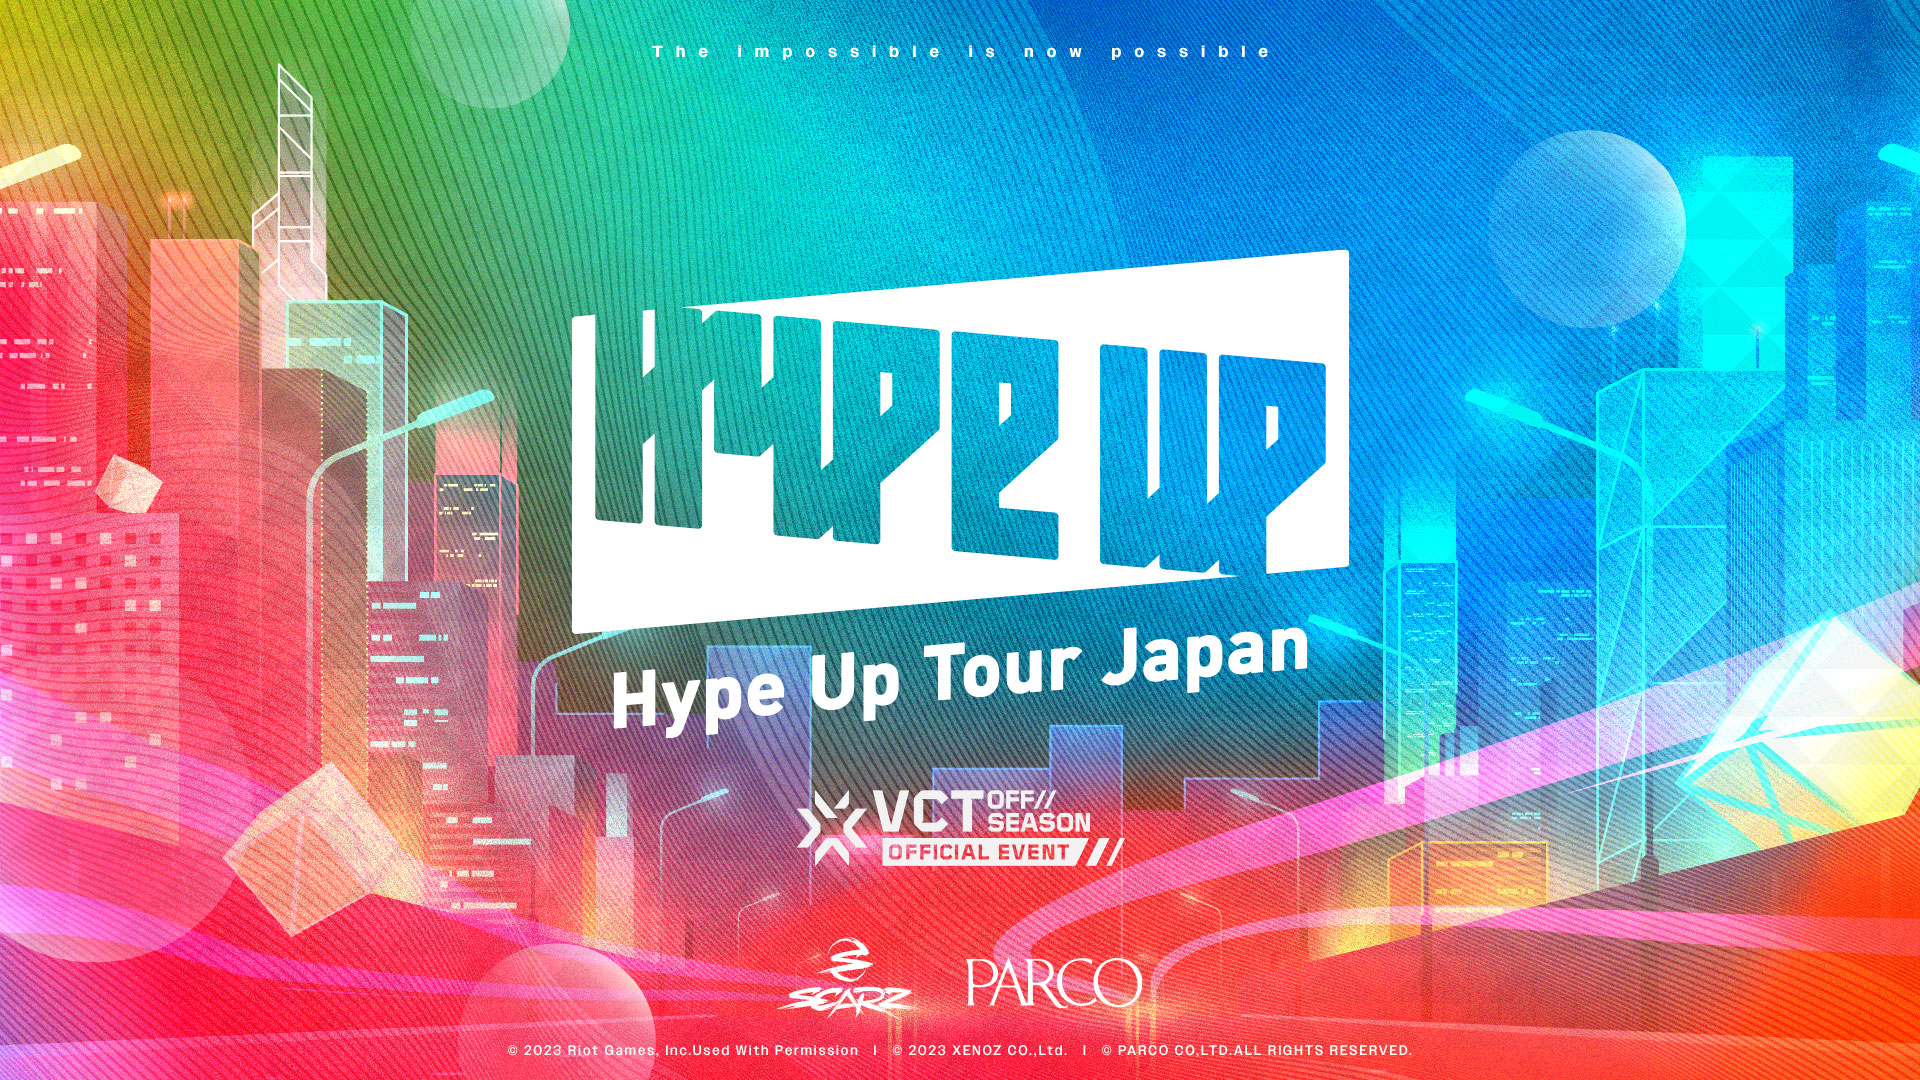 出演情報 – 鈴木ノリアキが『Hype Up Tour Japan』に出演